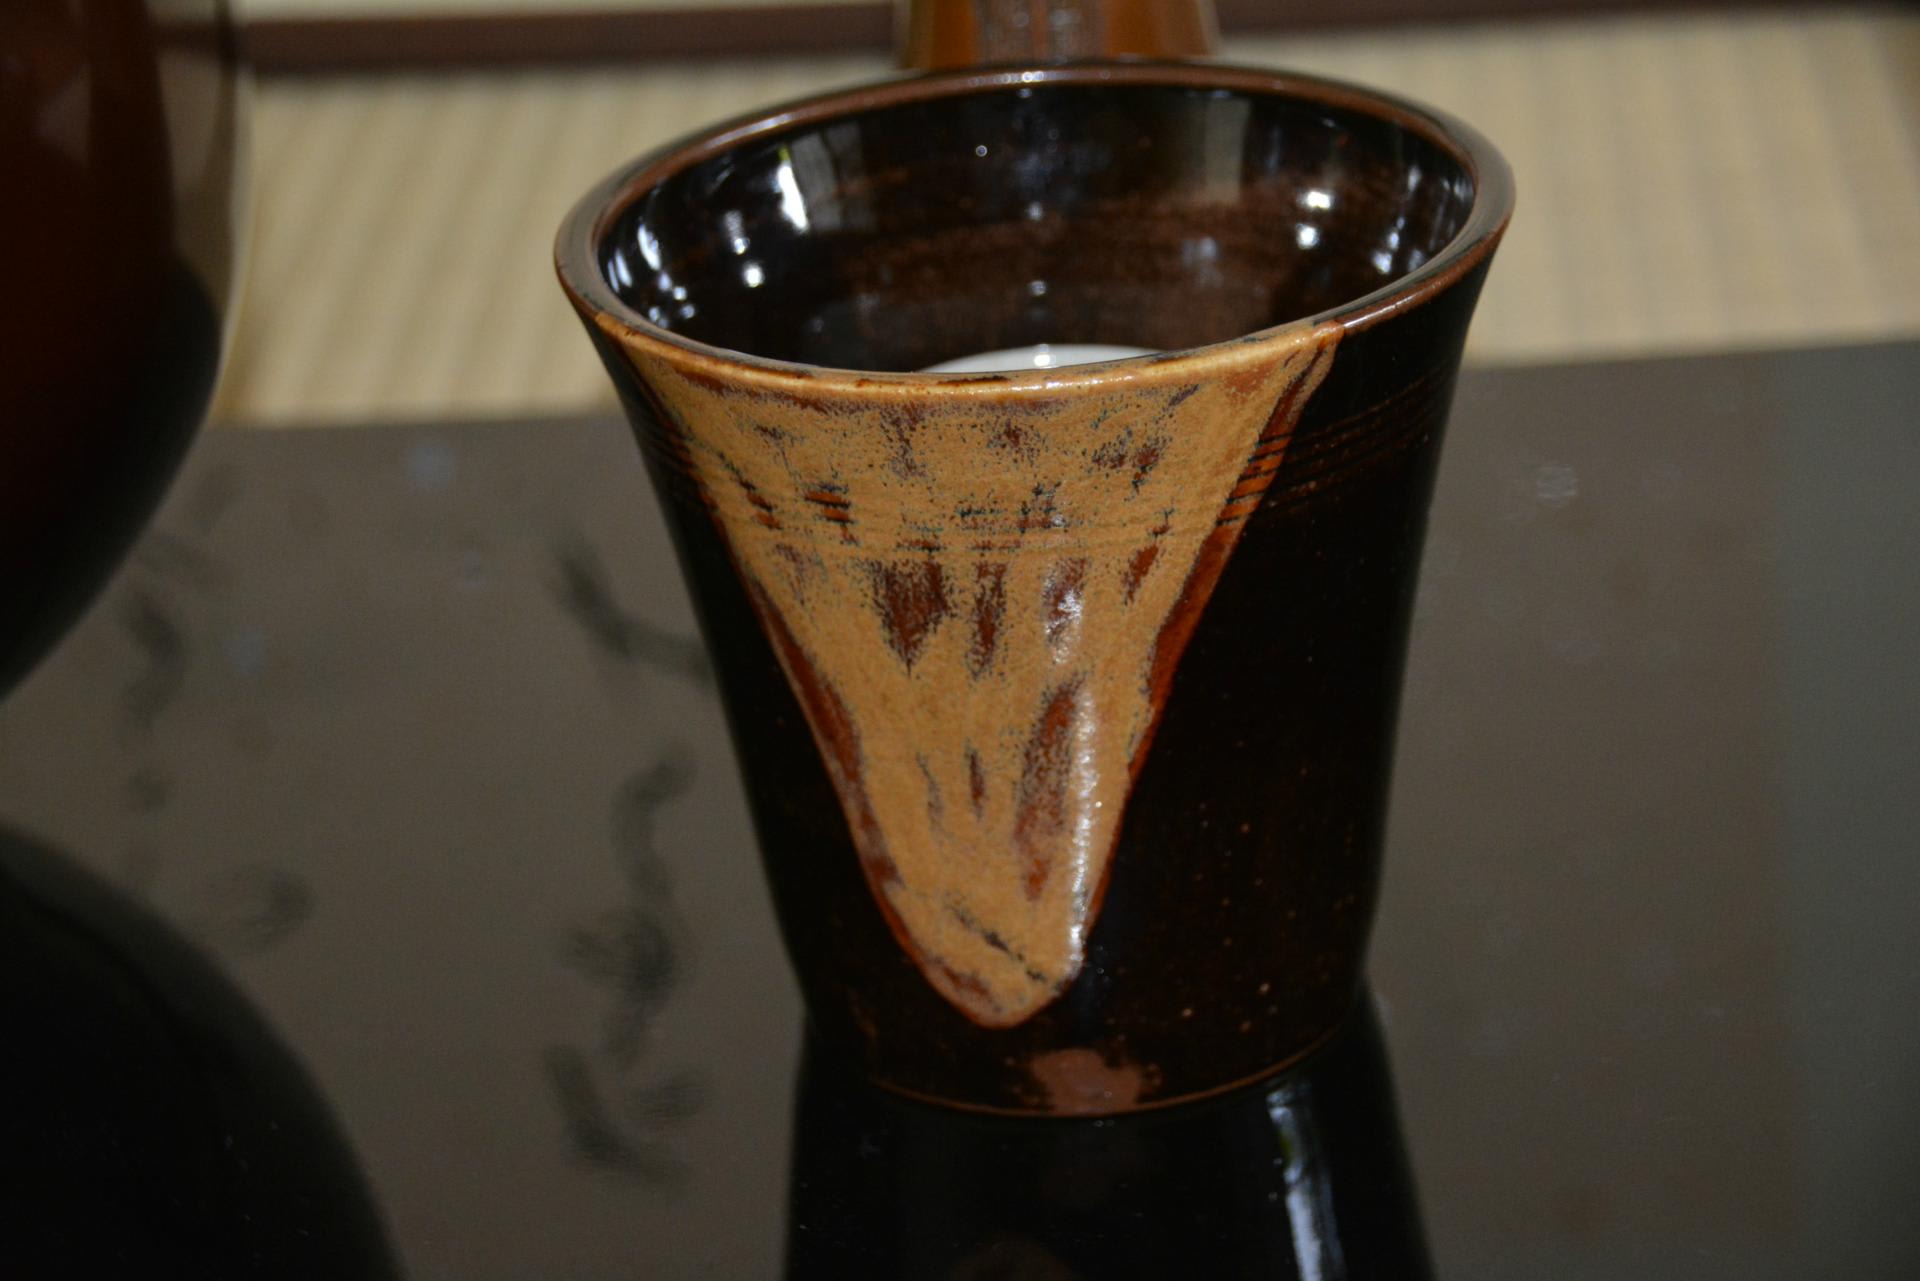 茶事に棒の先建水（膳所焼）、蓋置は独のブドウ唐草紋容器で思案中 